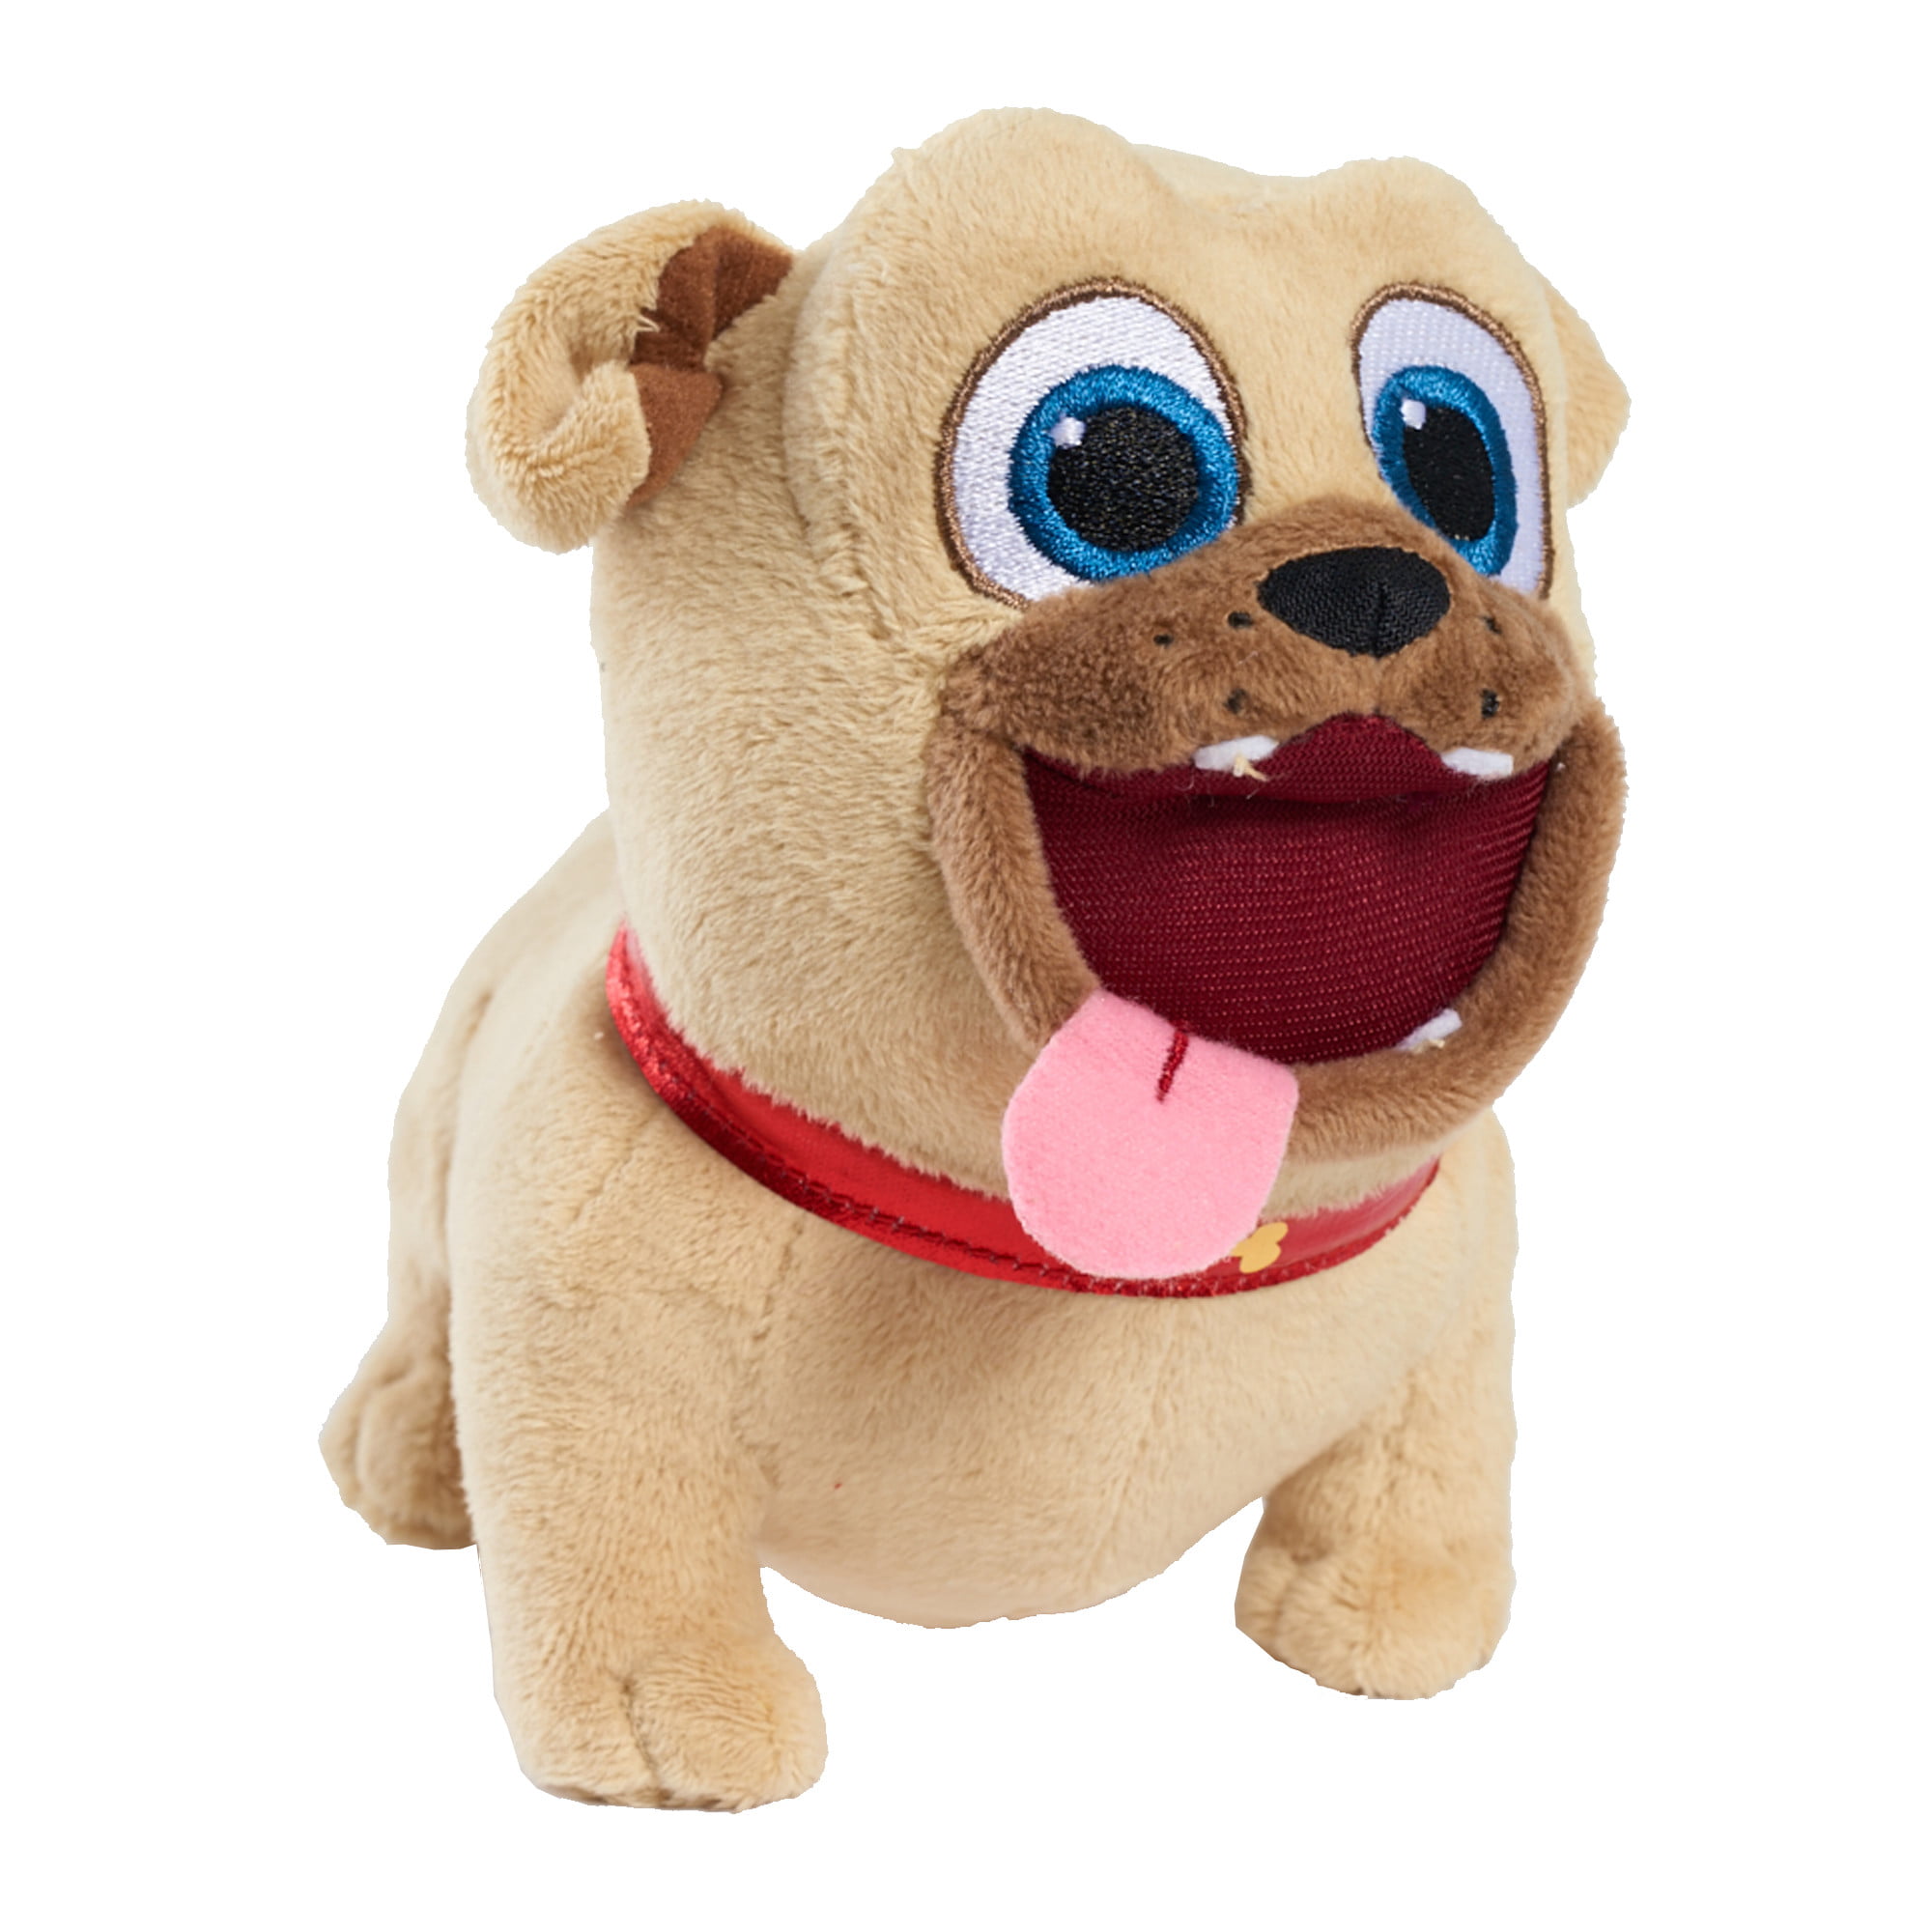 bingo stuffed animal